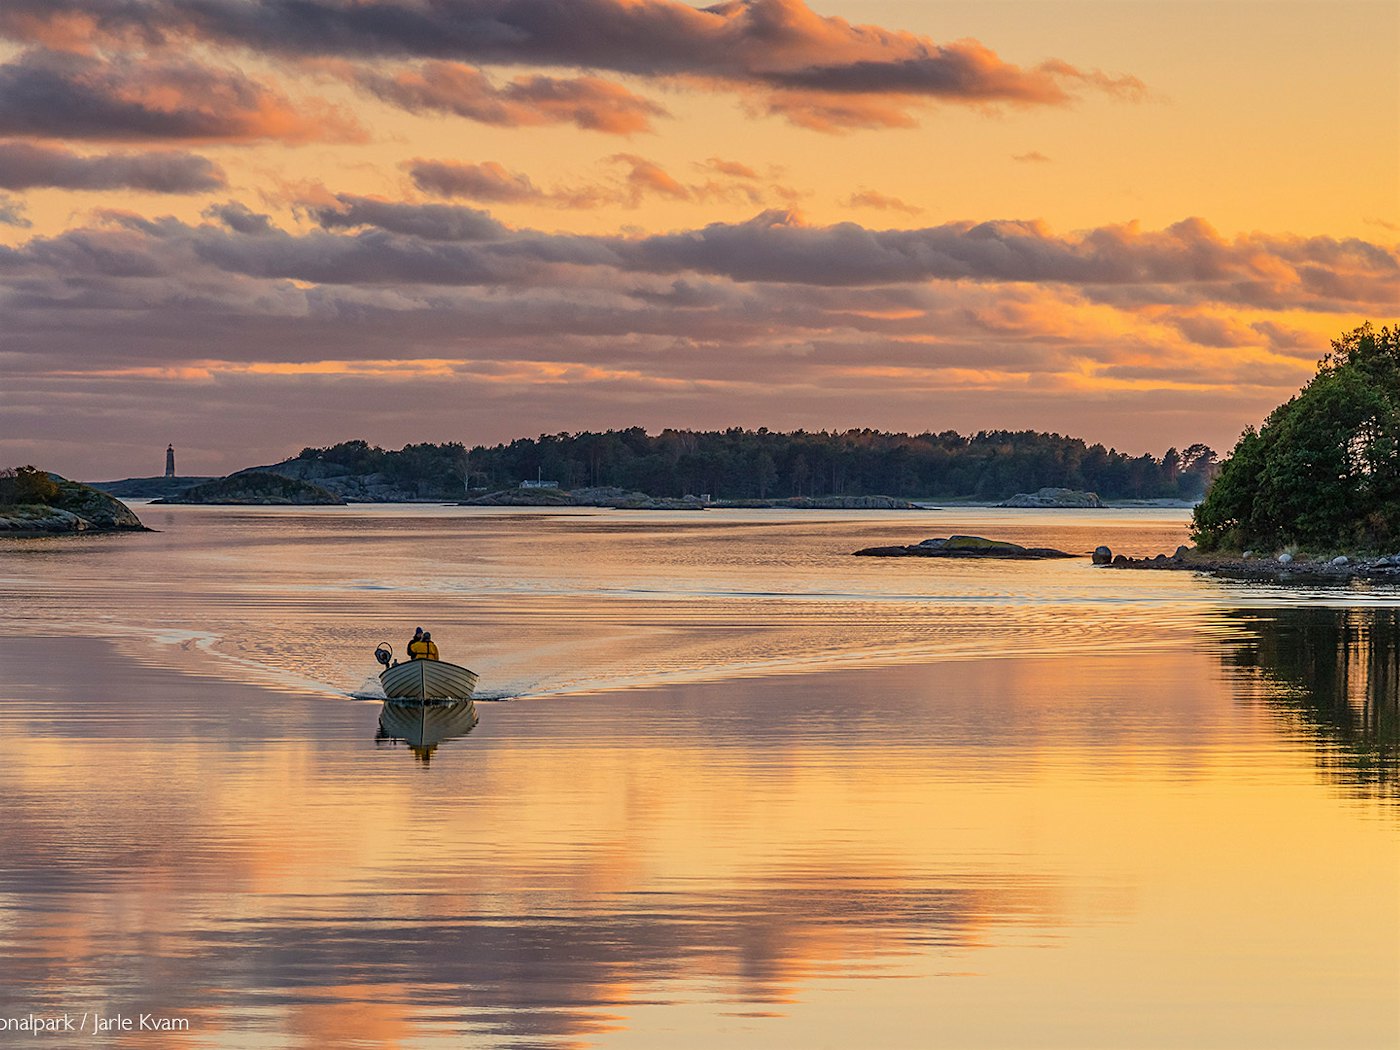 Das Boot segelt über das stille Wasser mit einem dramatischen Sonnenuntergang, der sich im Wasser widerspiegelt. Foto